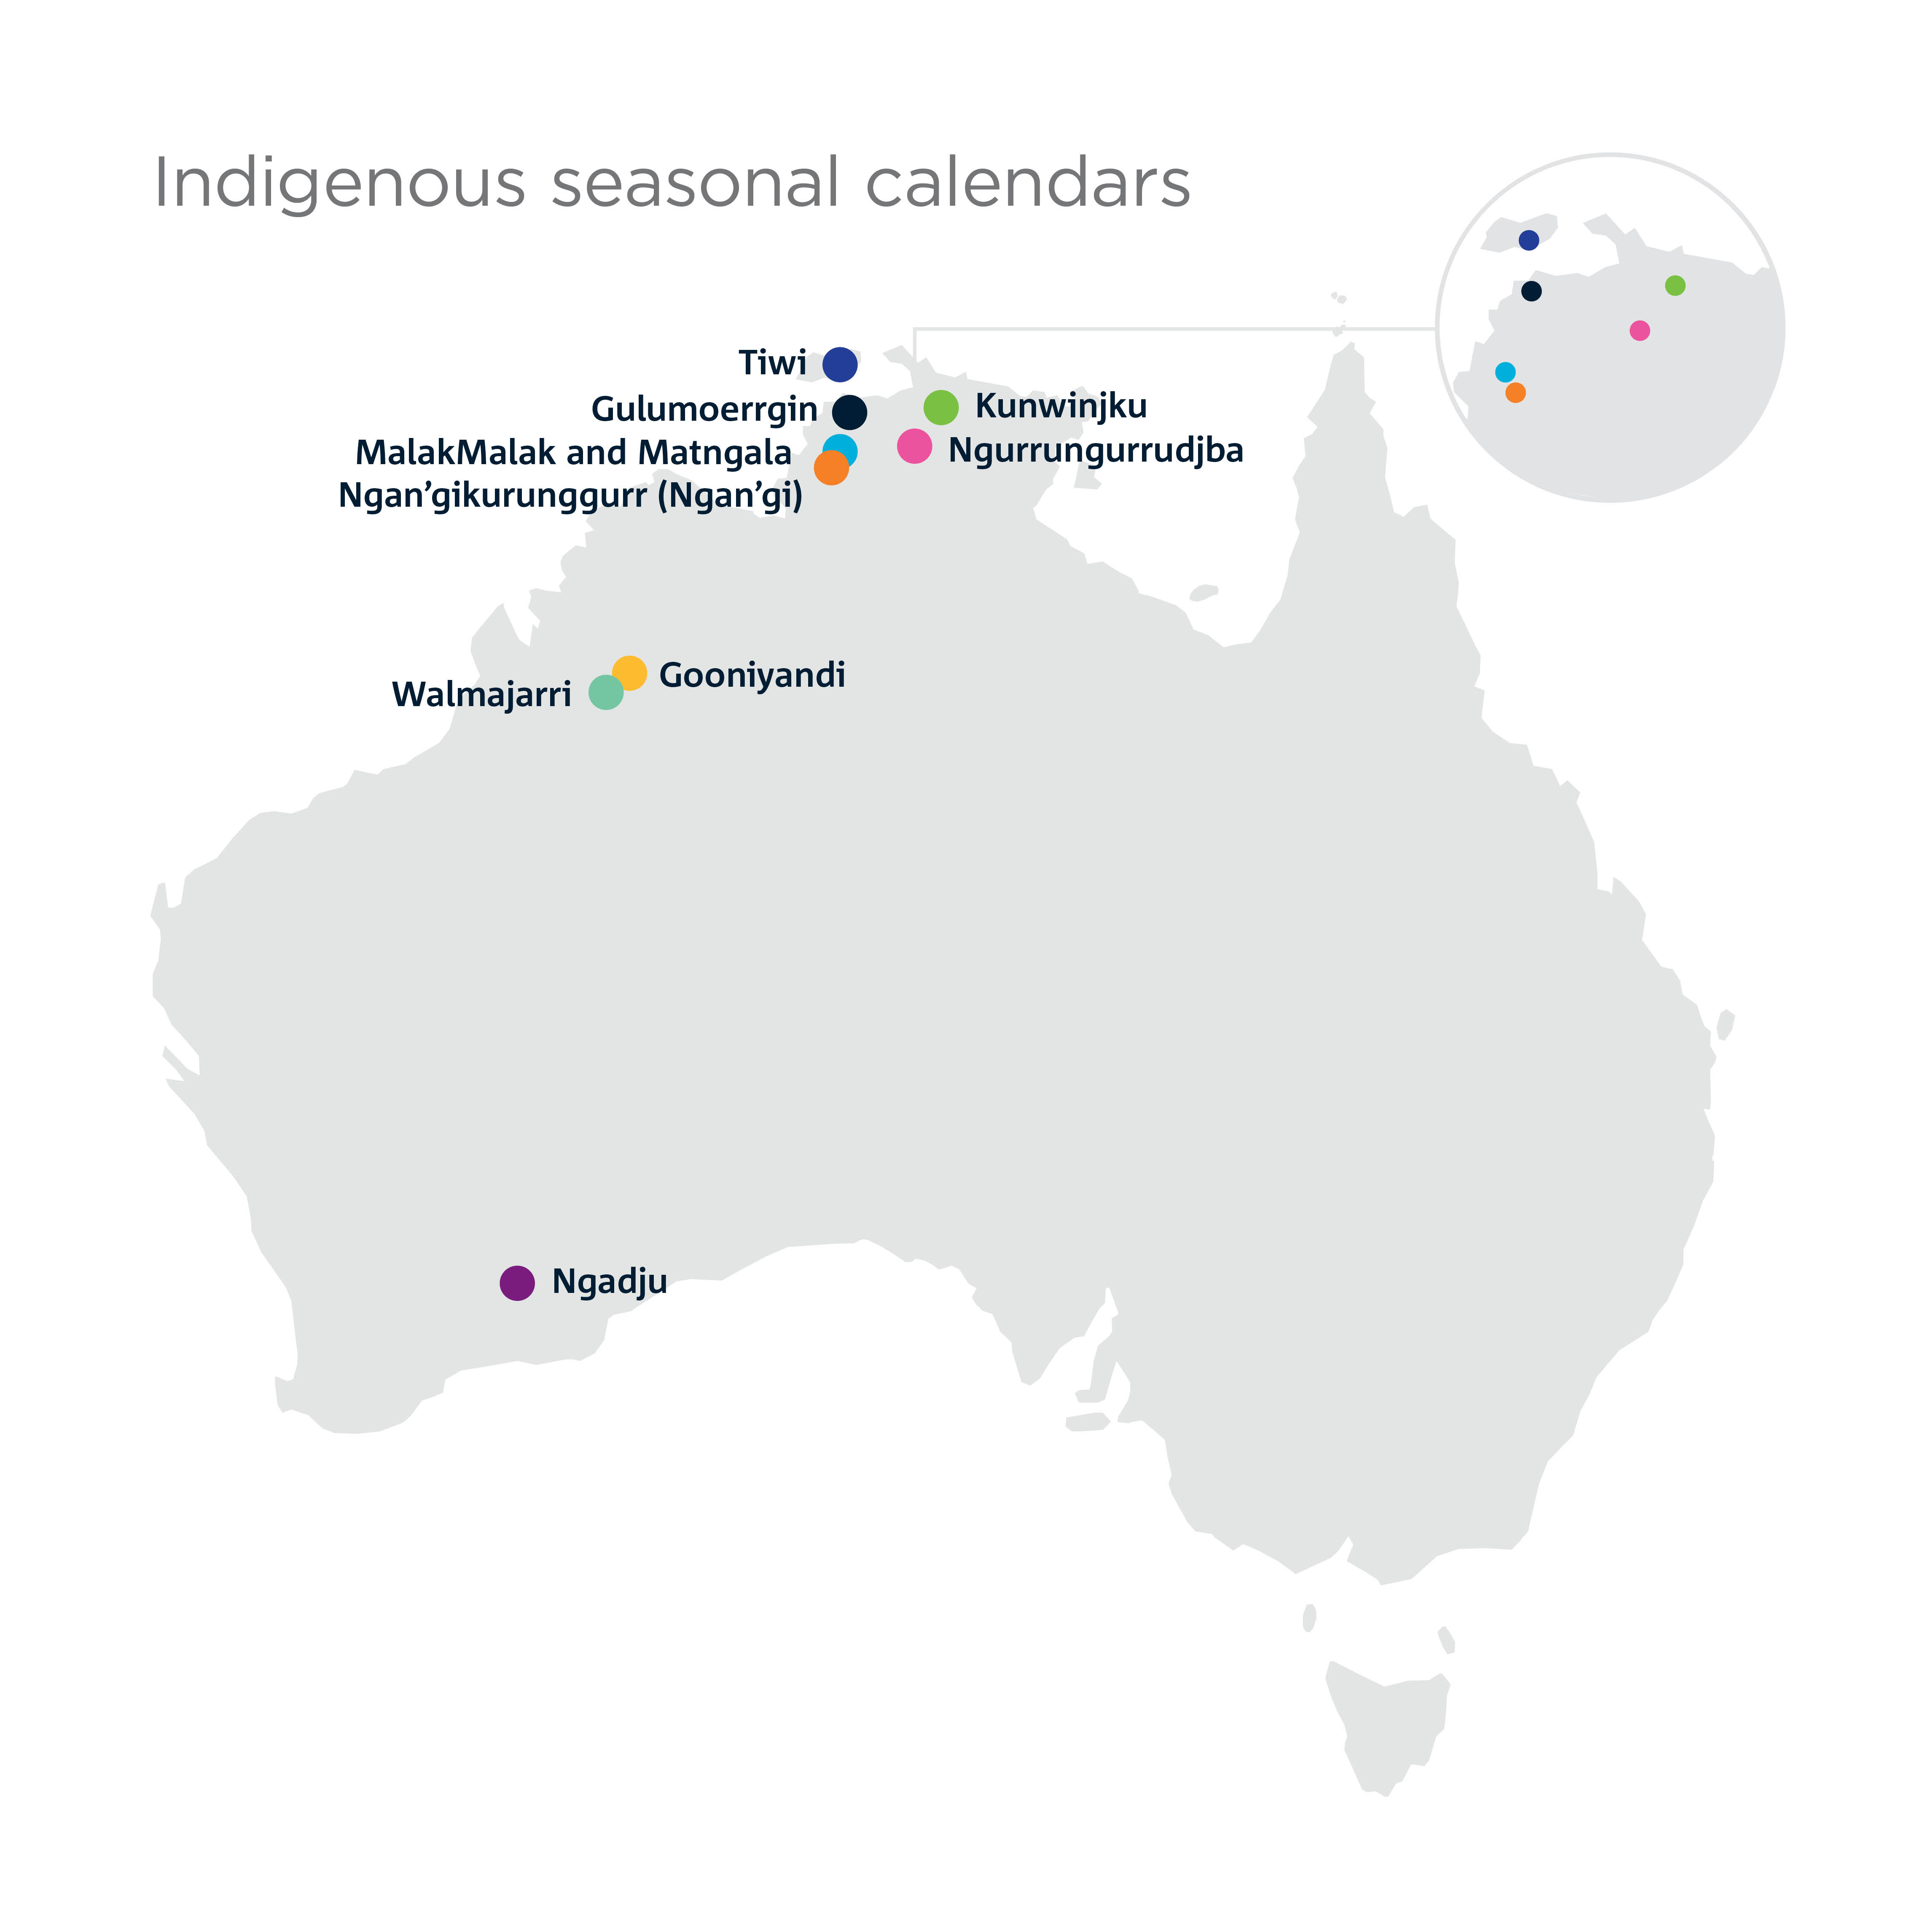 /-/media/Indigenous-science/Seasonal-calendars/maps/22-00245_LW_Seasonal-Calendars-all-pins.jpg?mw=1000&hash=C51C1CD7E23D62C563C3023F248D5D27